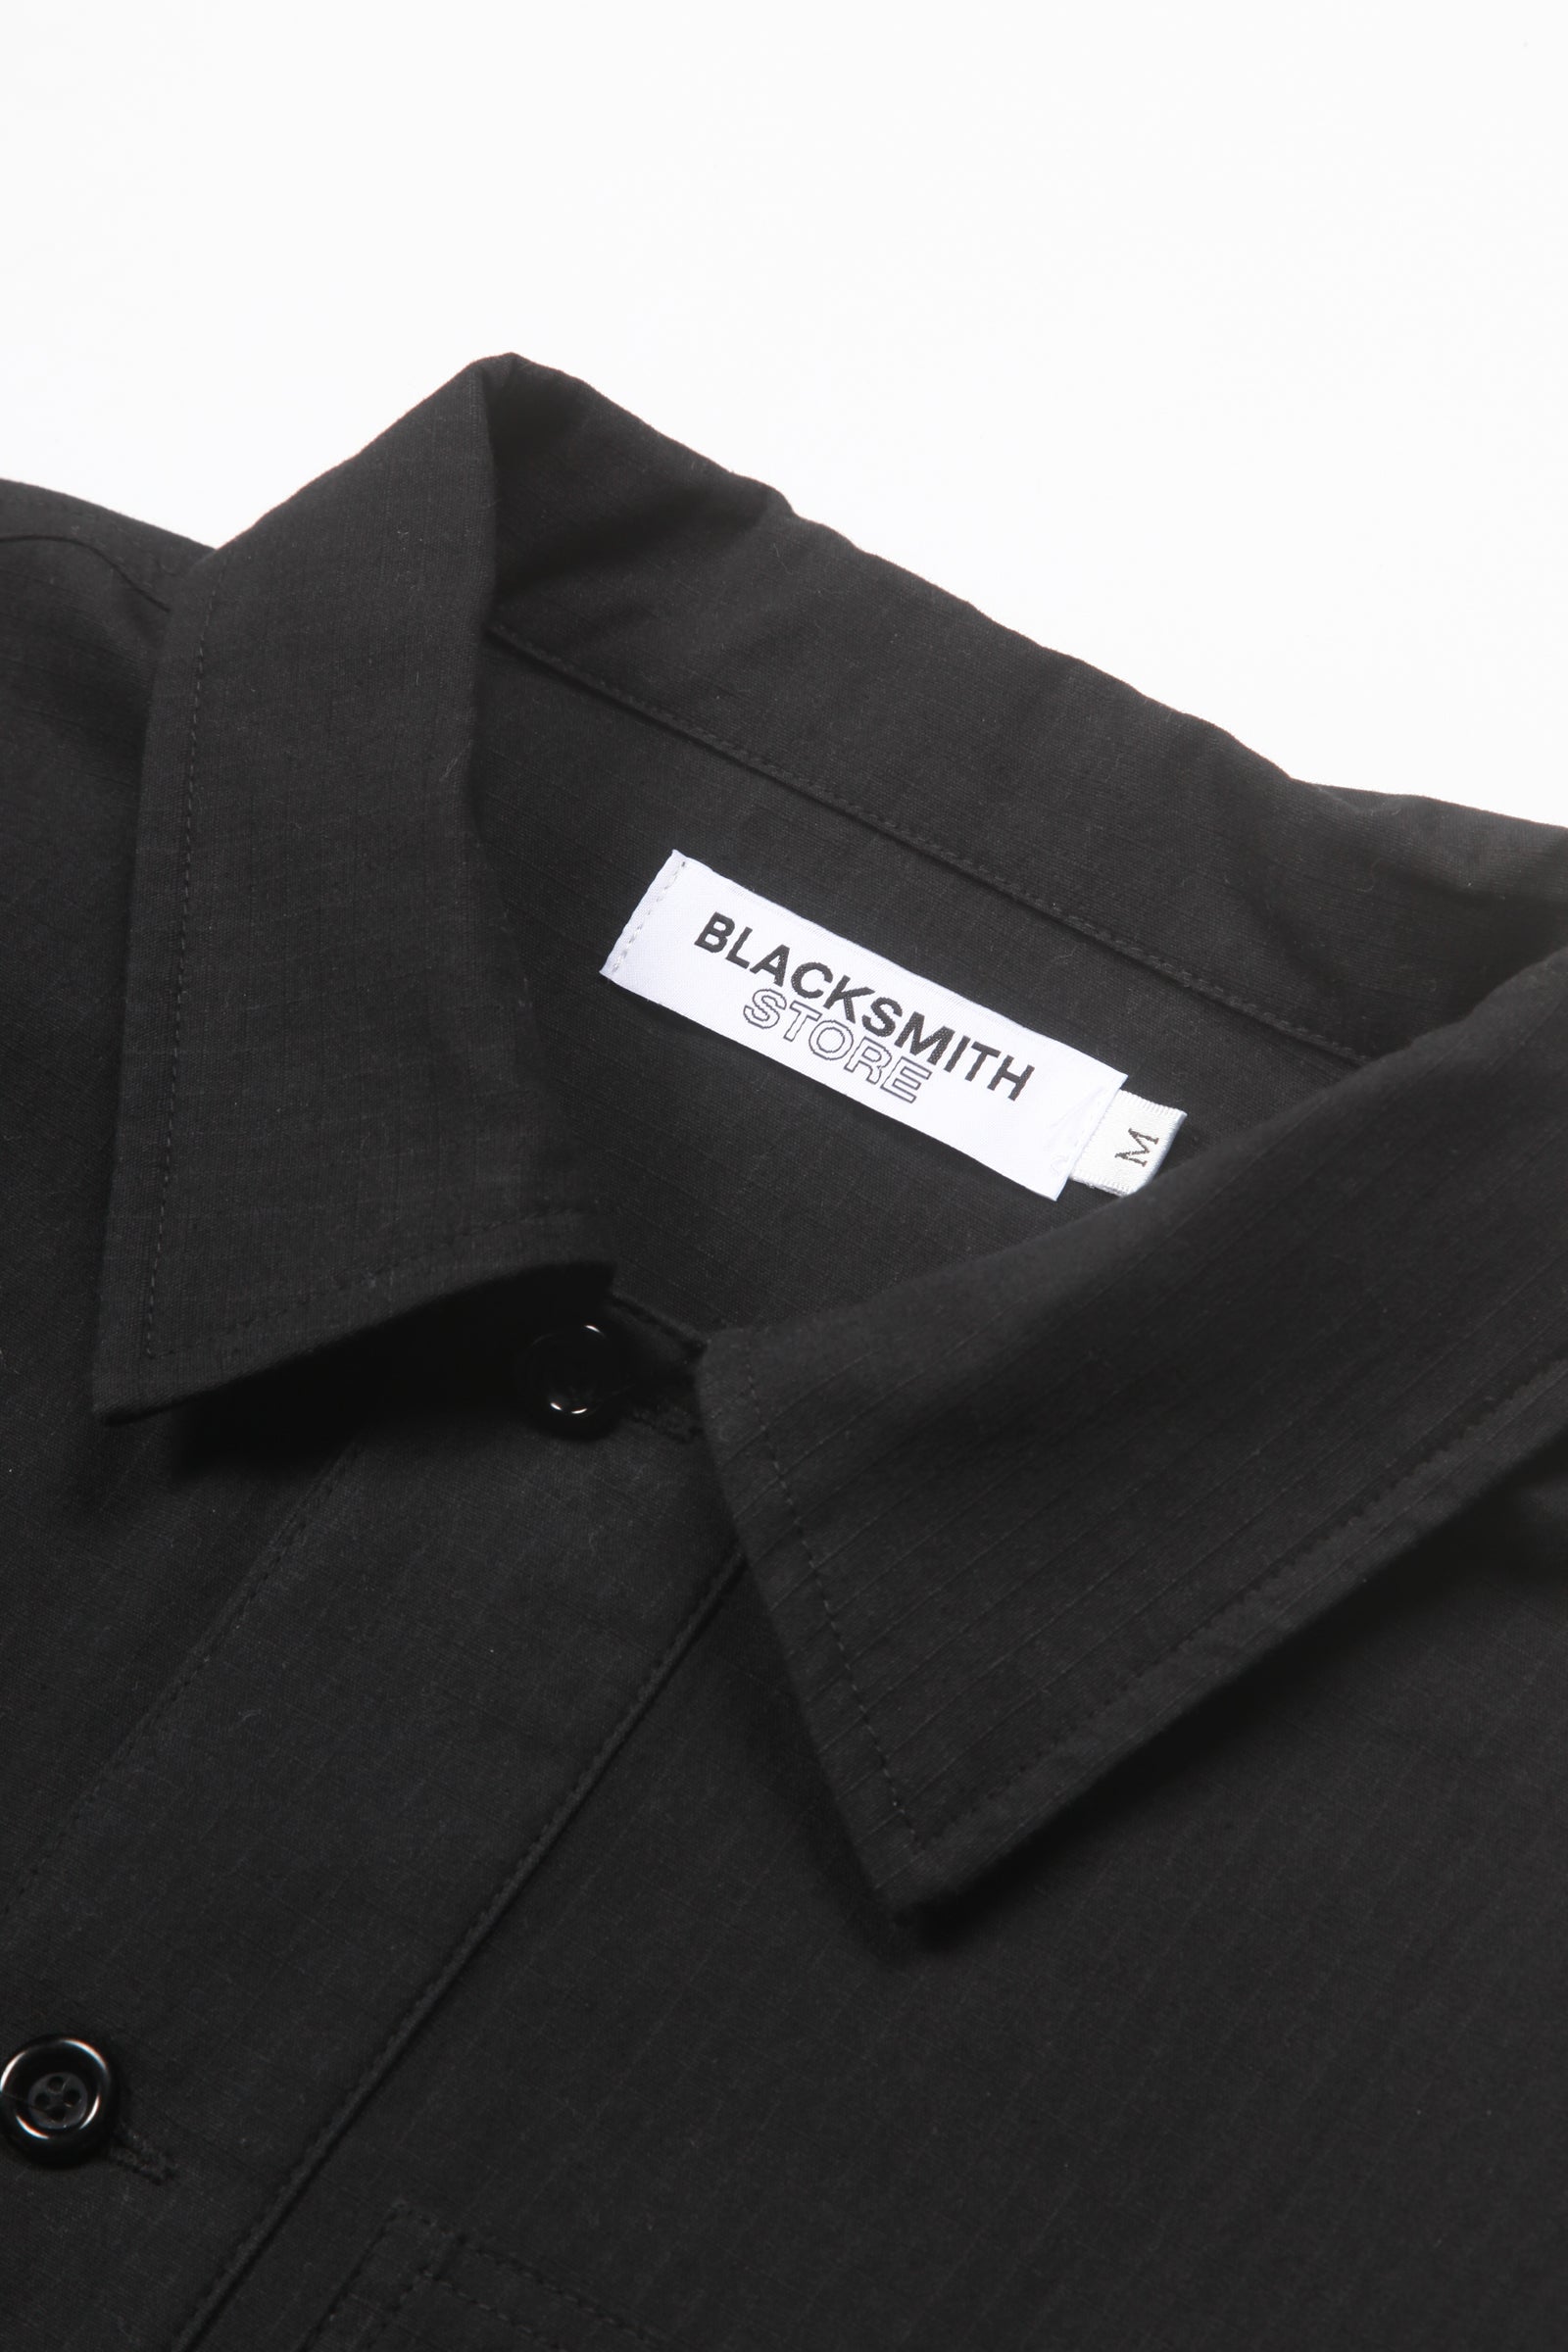 Blacksmith - Ripstop Military Popover - Black